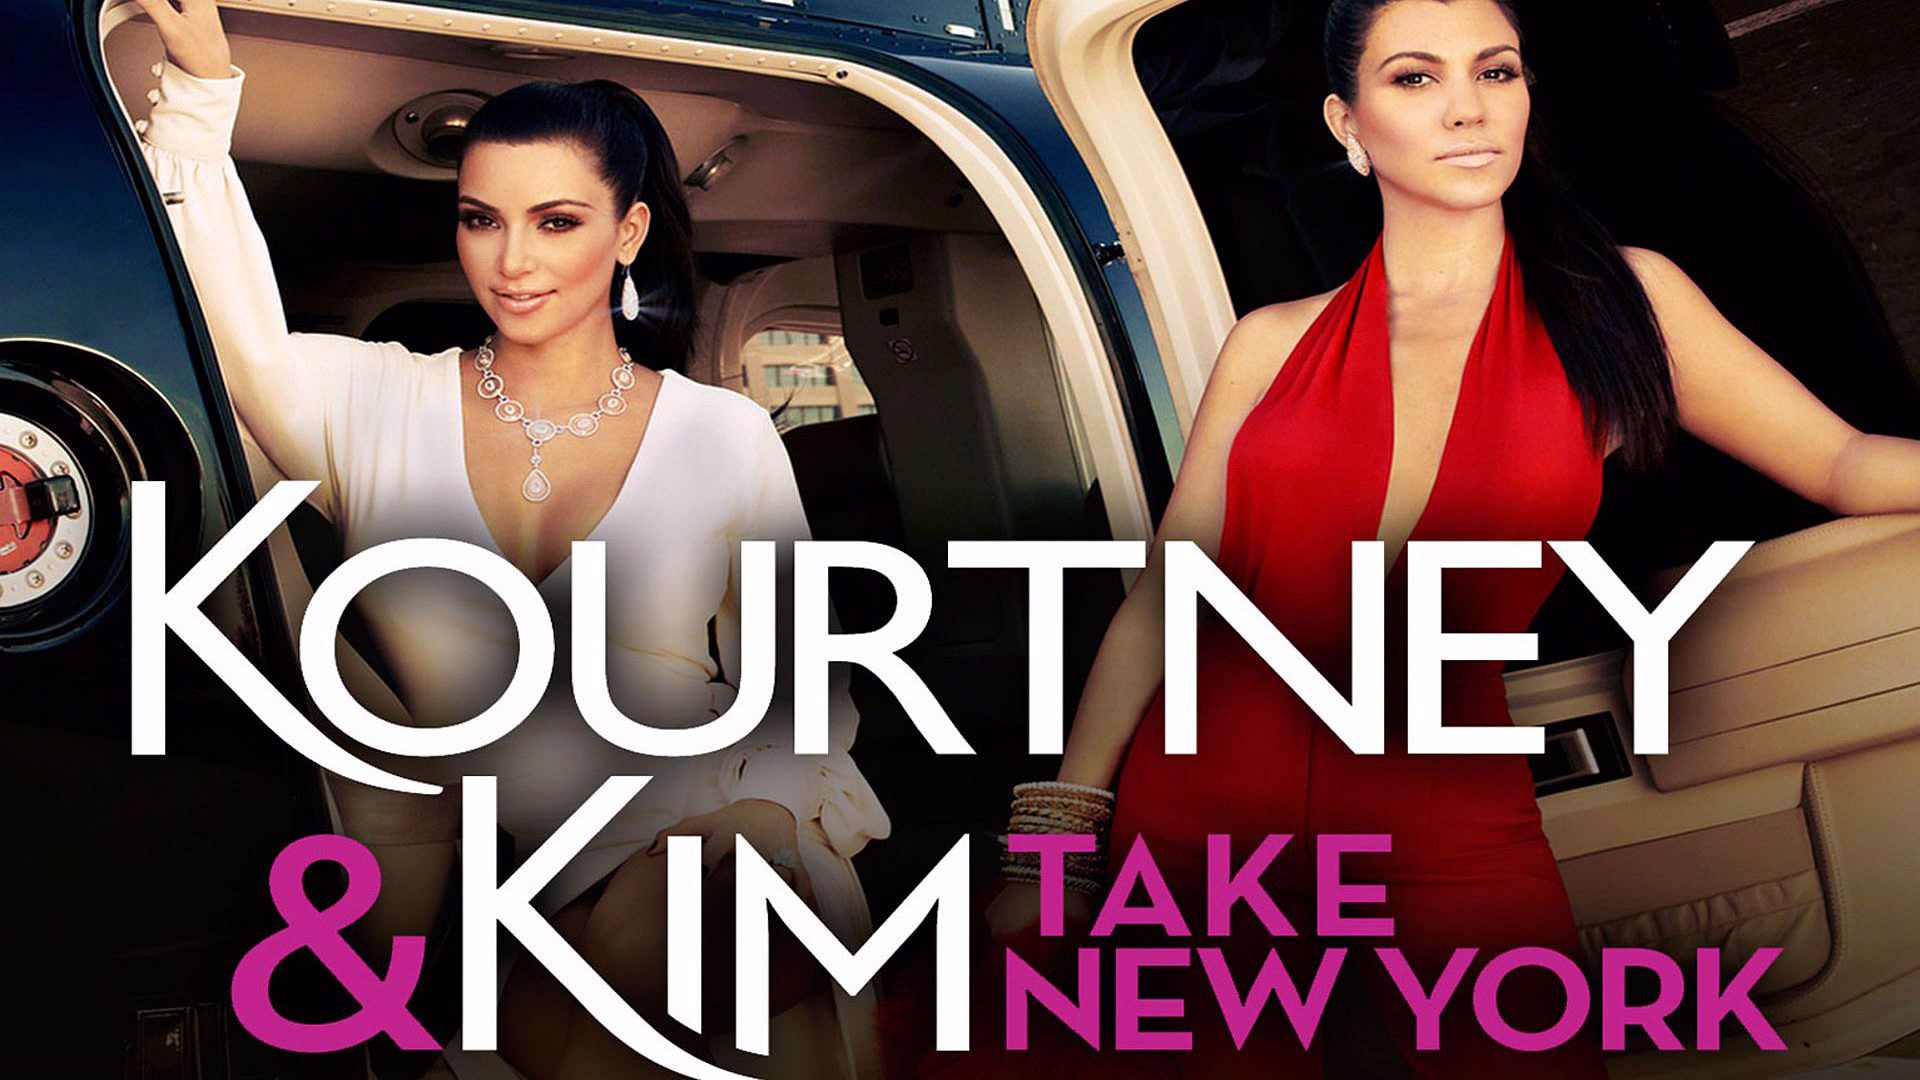 Kourtney and Kim Take New York 4